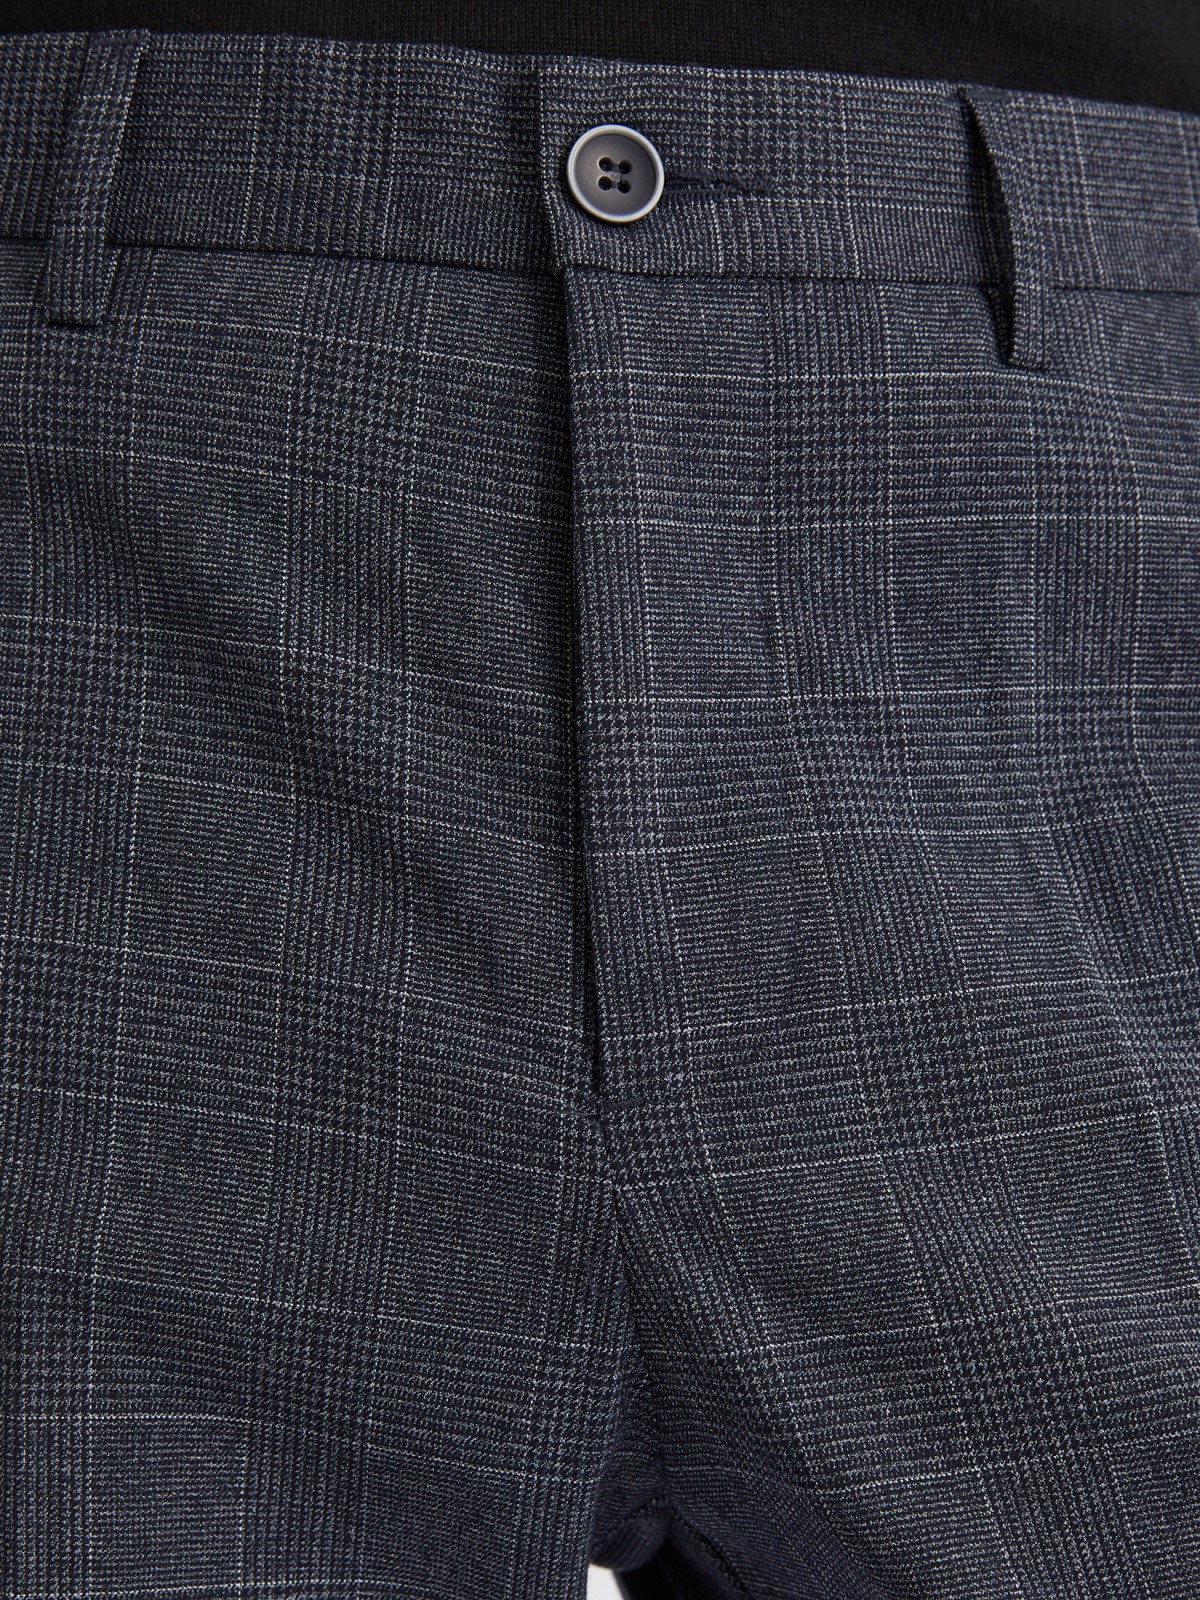 Офисные брюки силуэта Slim со стрелками и узором в клетку zolla 012337366043, цвет синий, размер 34 - фото 3